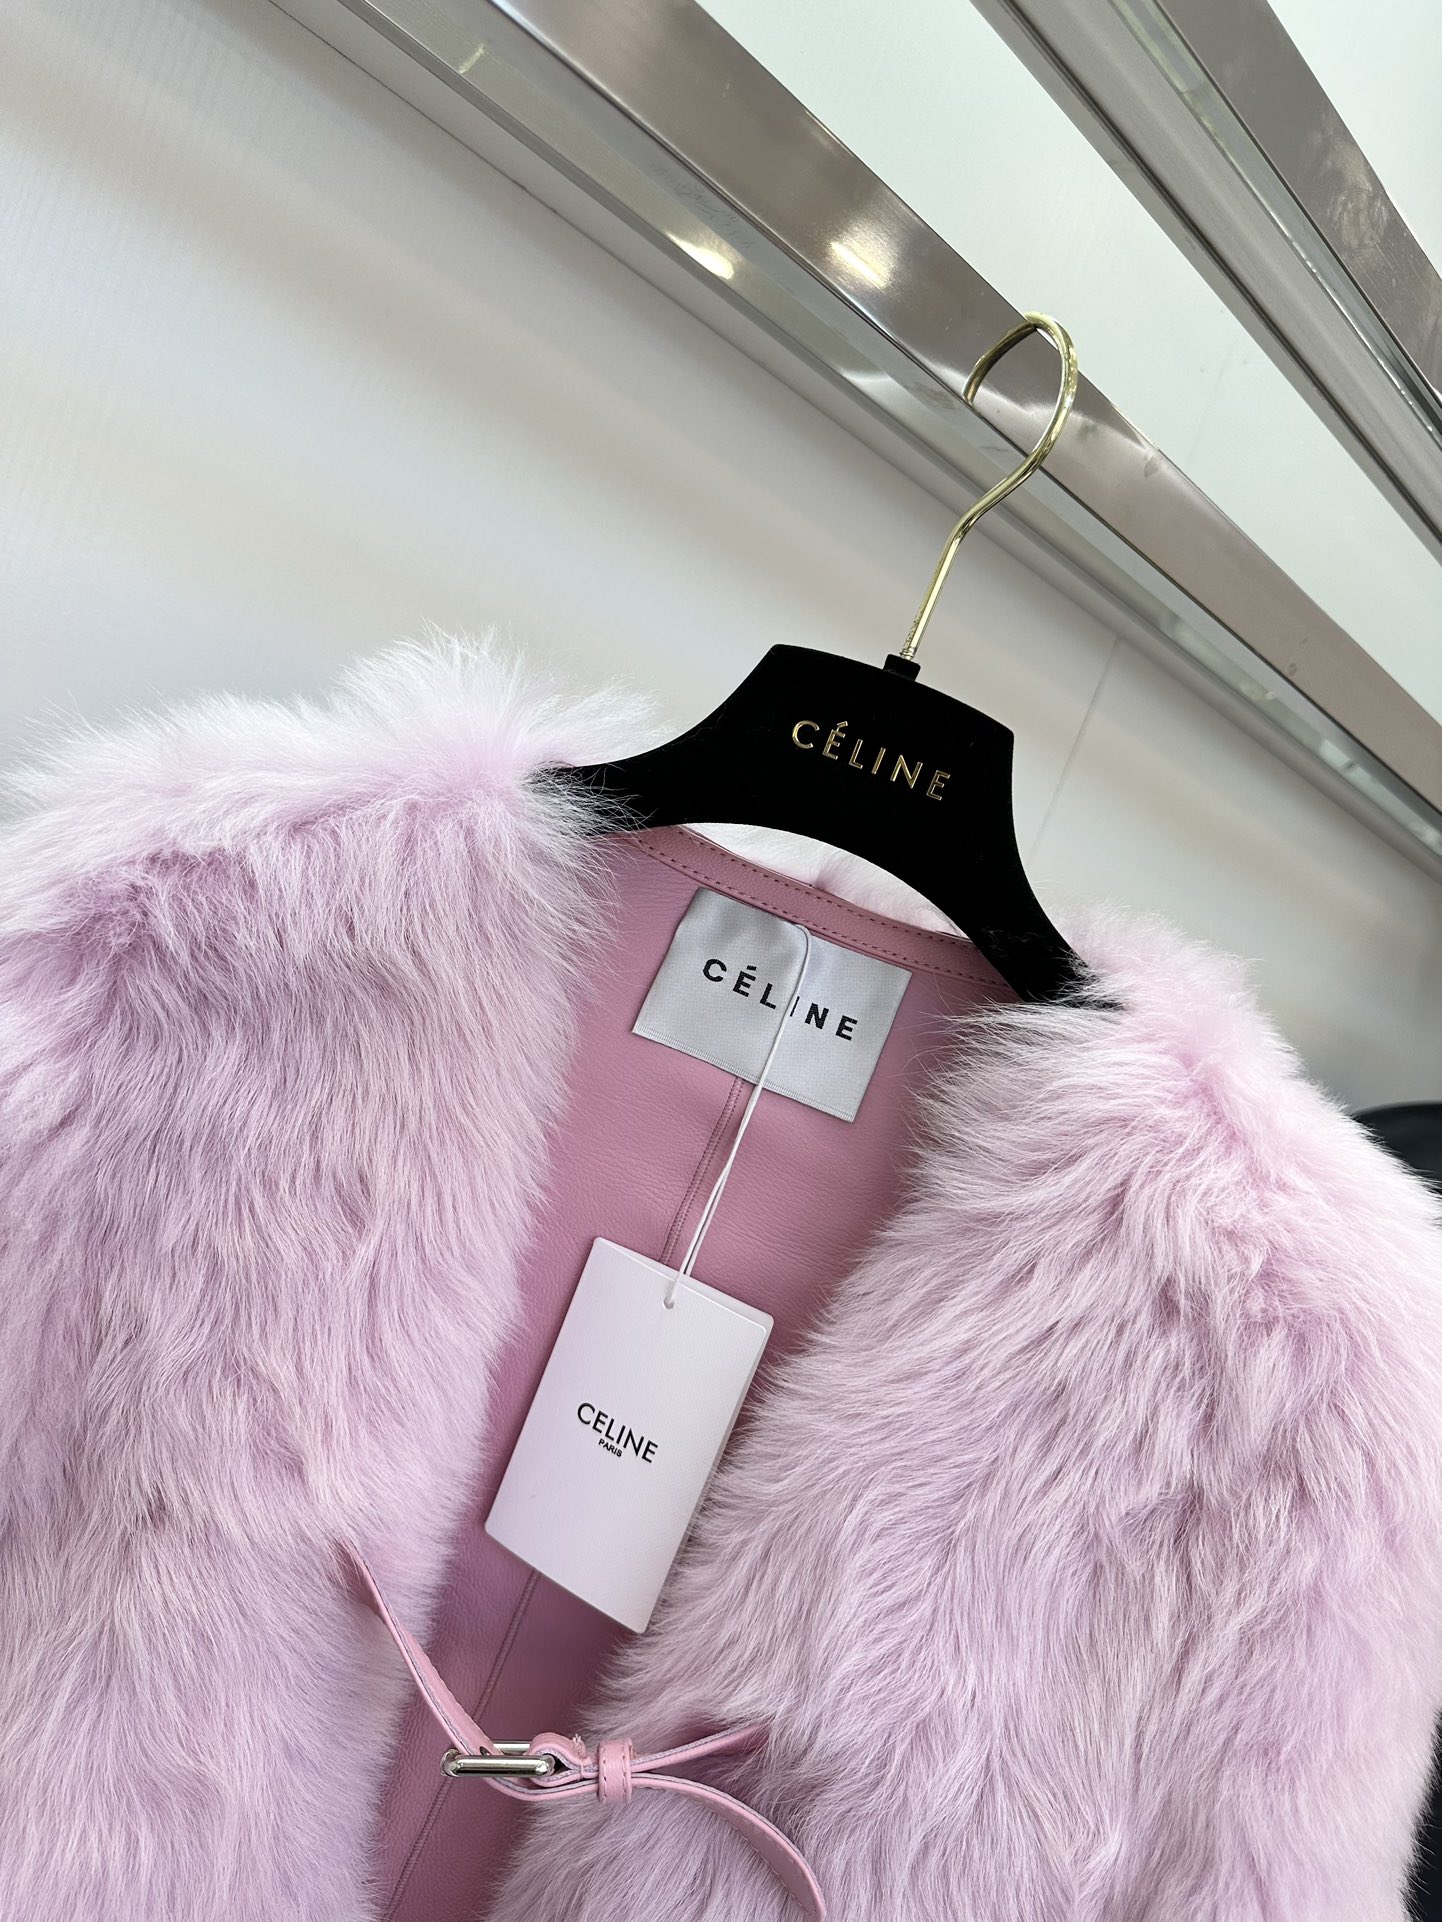 セリーヌ ジャンパー偽物 鮮やかな色 イタリア製 高級品 もこもこ 暖かい ファッション レディース 3色可選 ピンク_6